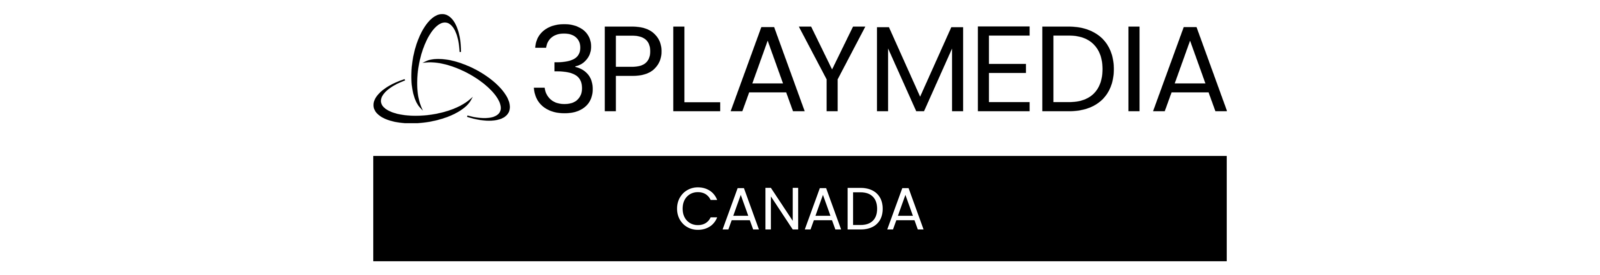 3Play Media Canada logo